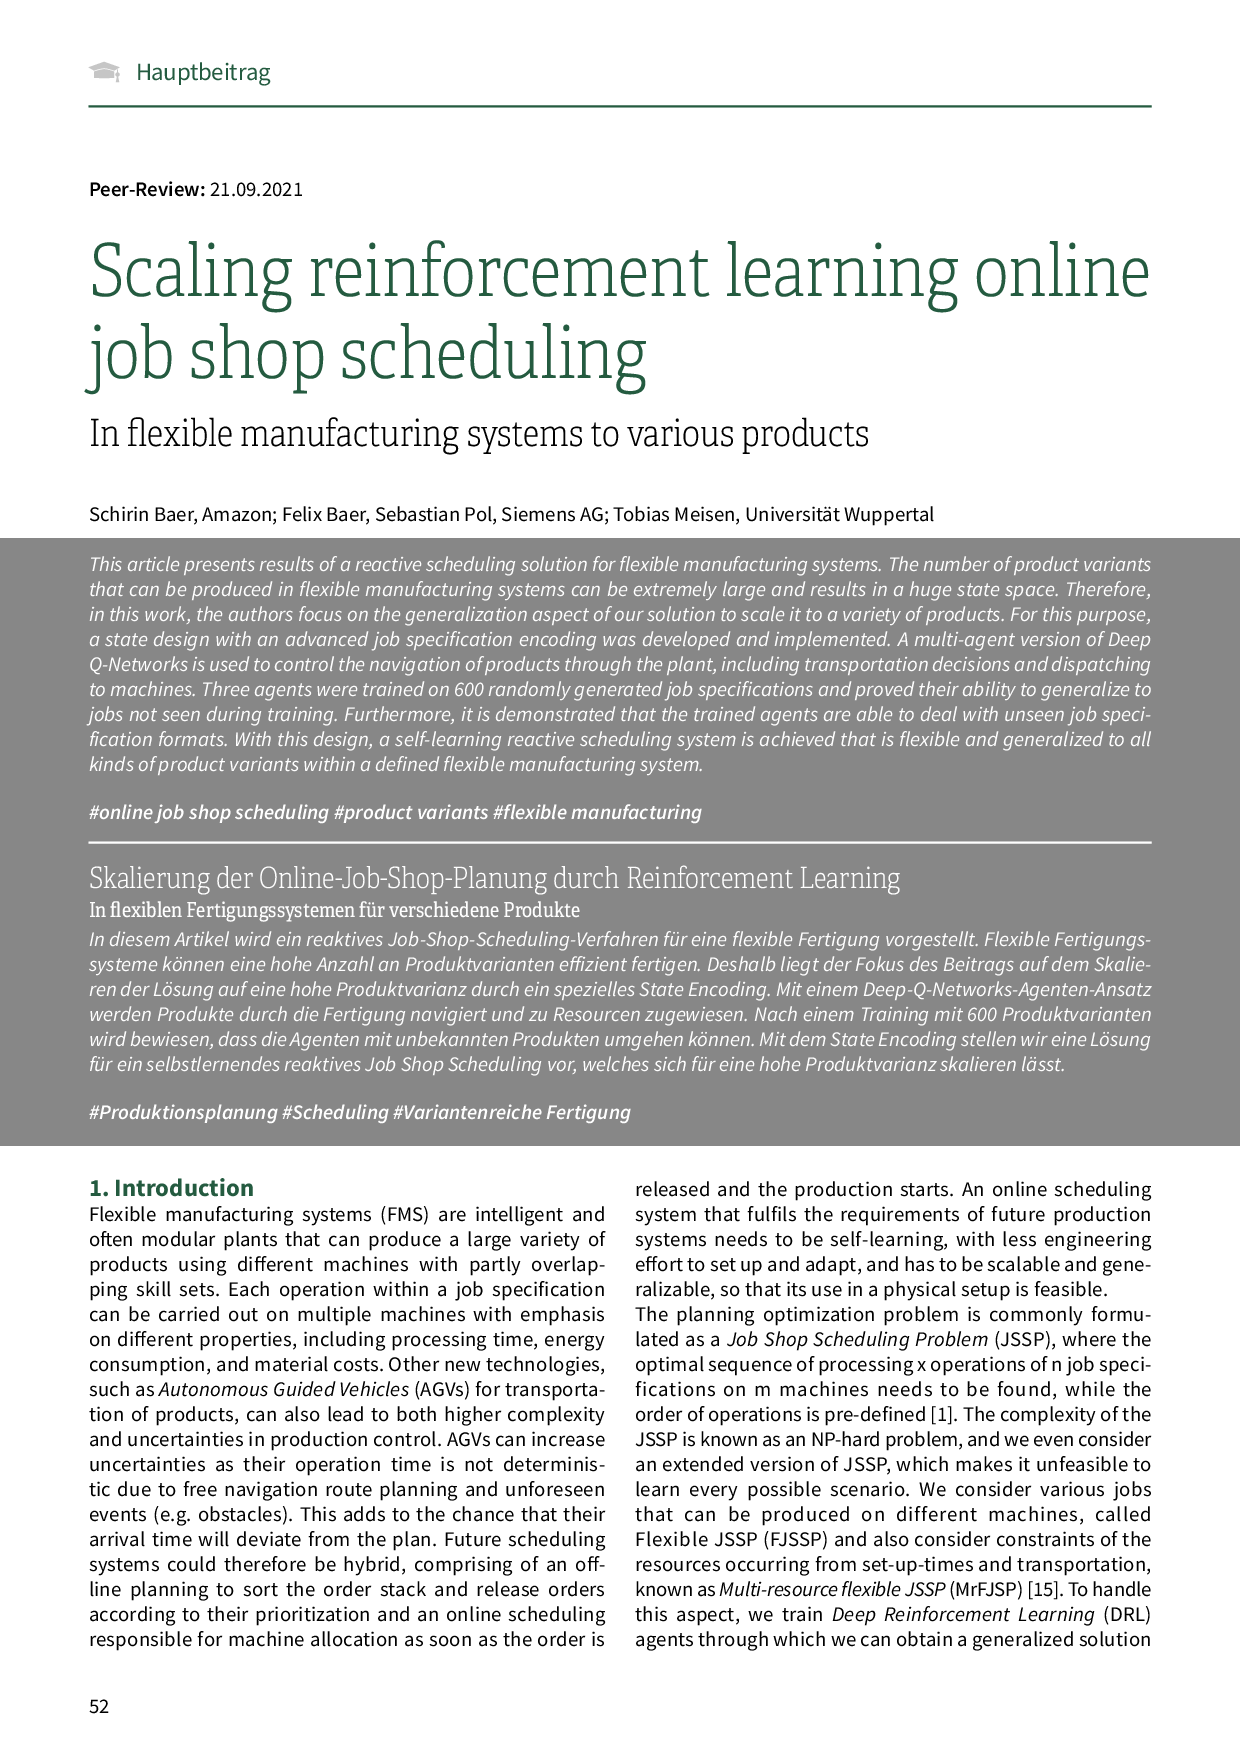 Skalierung der Online-Job-Shop-Planung durch Reinforcement Learning – In flexiblen Fertigungssystemen für verschiedene Produkte